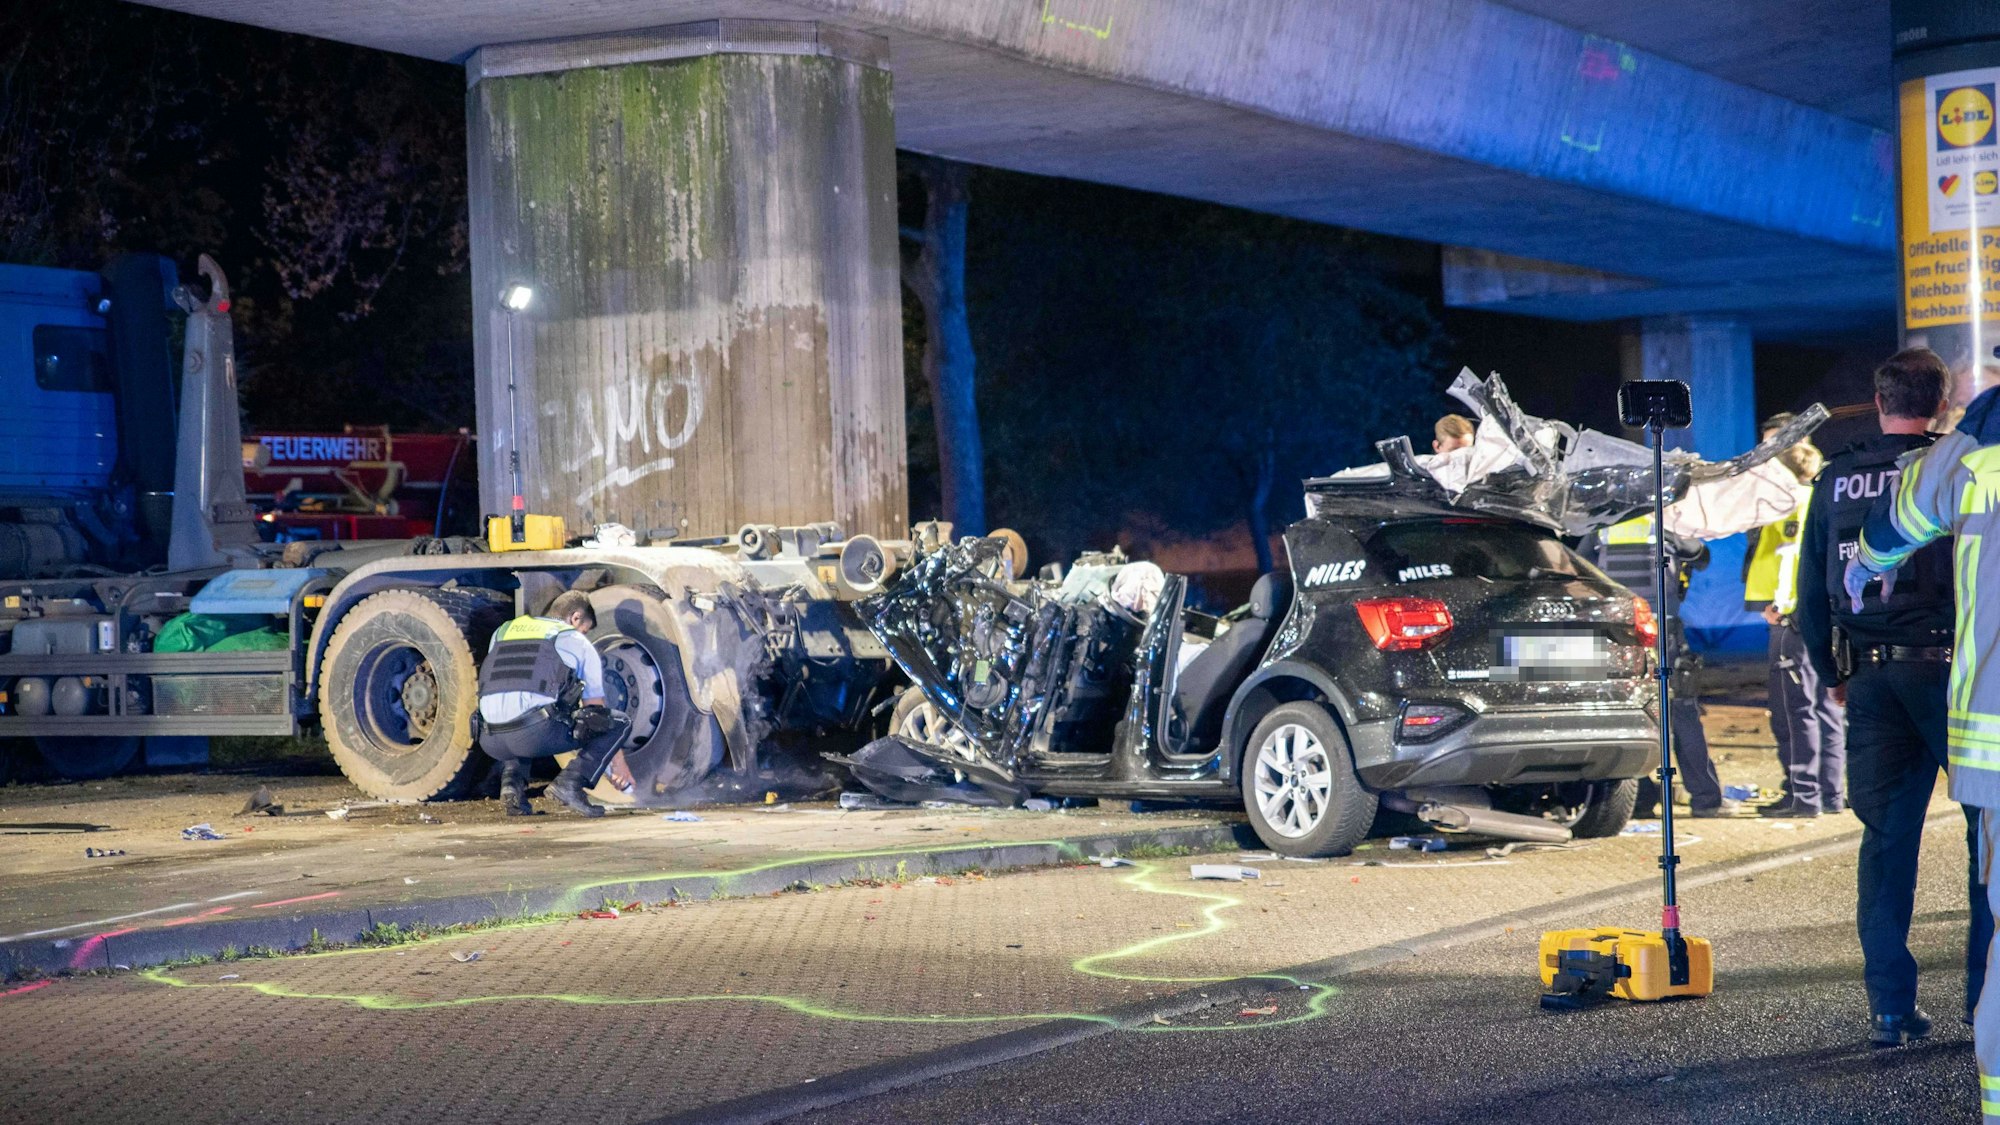 Ein Team der Polizei begutachtet den völlig zerstörten Audi nach einem schweren Unfall in Köln-Bilderstöckchen.